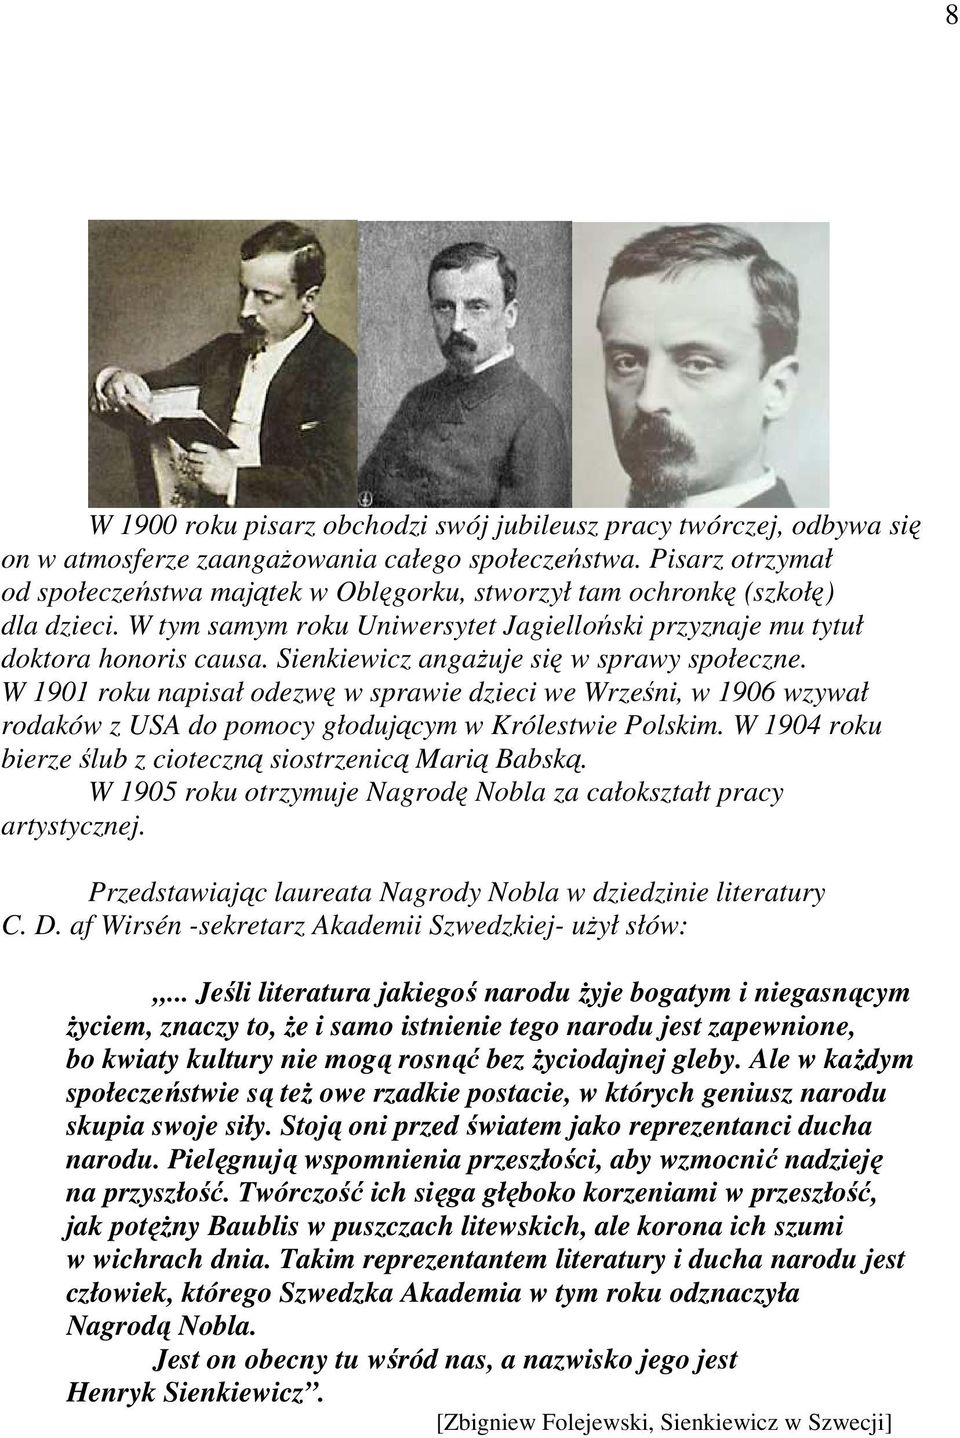 Sienkiewicz angaŝuje się w sprawy społeczne. W 1901 roku napisał odezwę w sprawie dzieci we Wrześni, w 1906 wzywał rodaków z USA do pomocy głodującym w Królestwie Polskim.